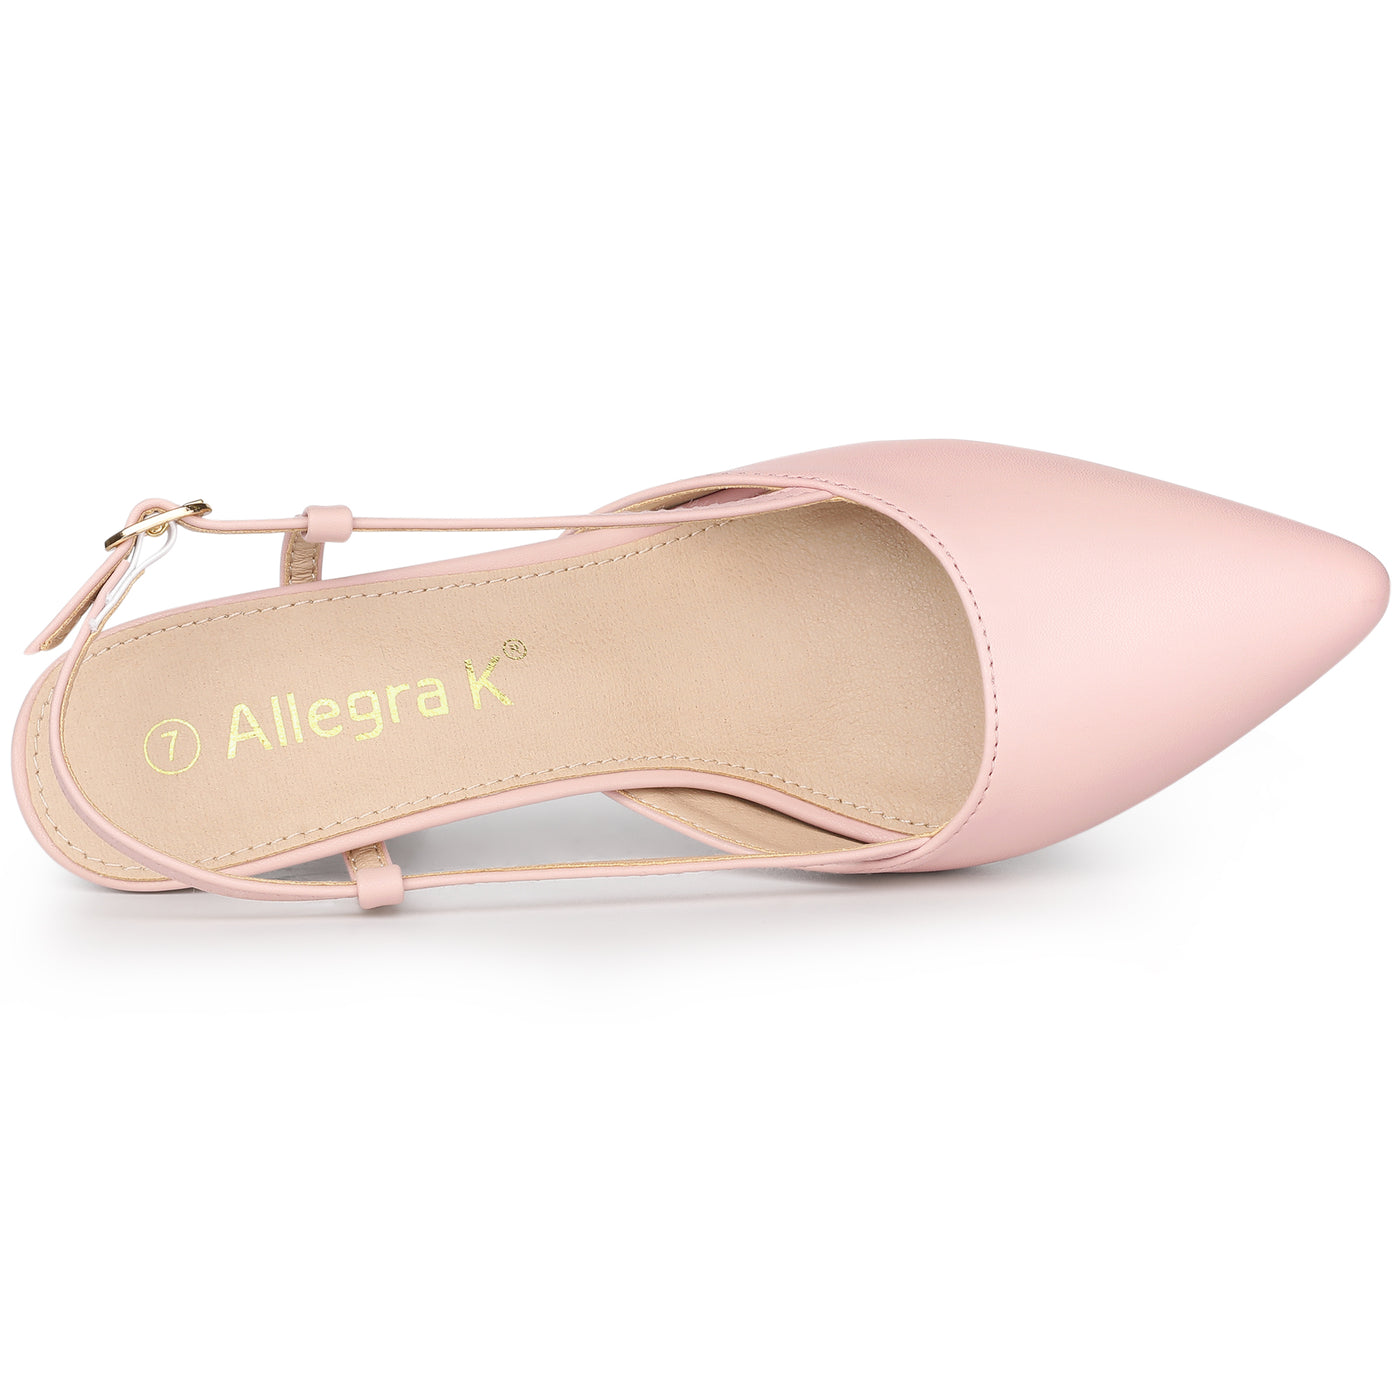 Allegra K Women's Slingback Stiletto Clear Heels Pointed Toe Pump